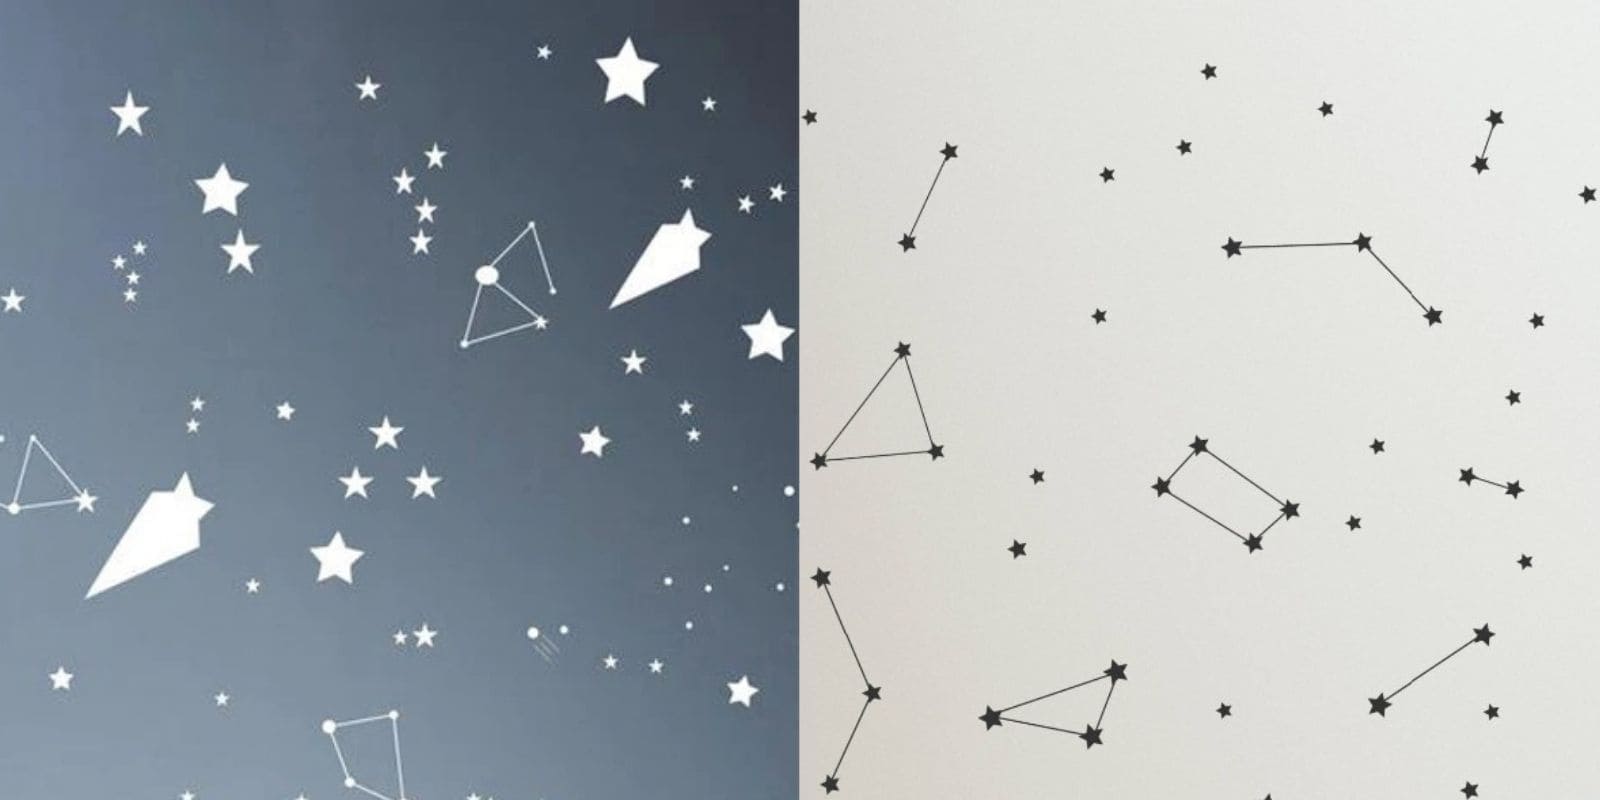 Tuto pour fabriquer un projecteur de constellations et d'étoiles 